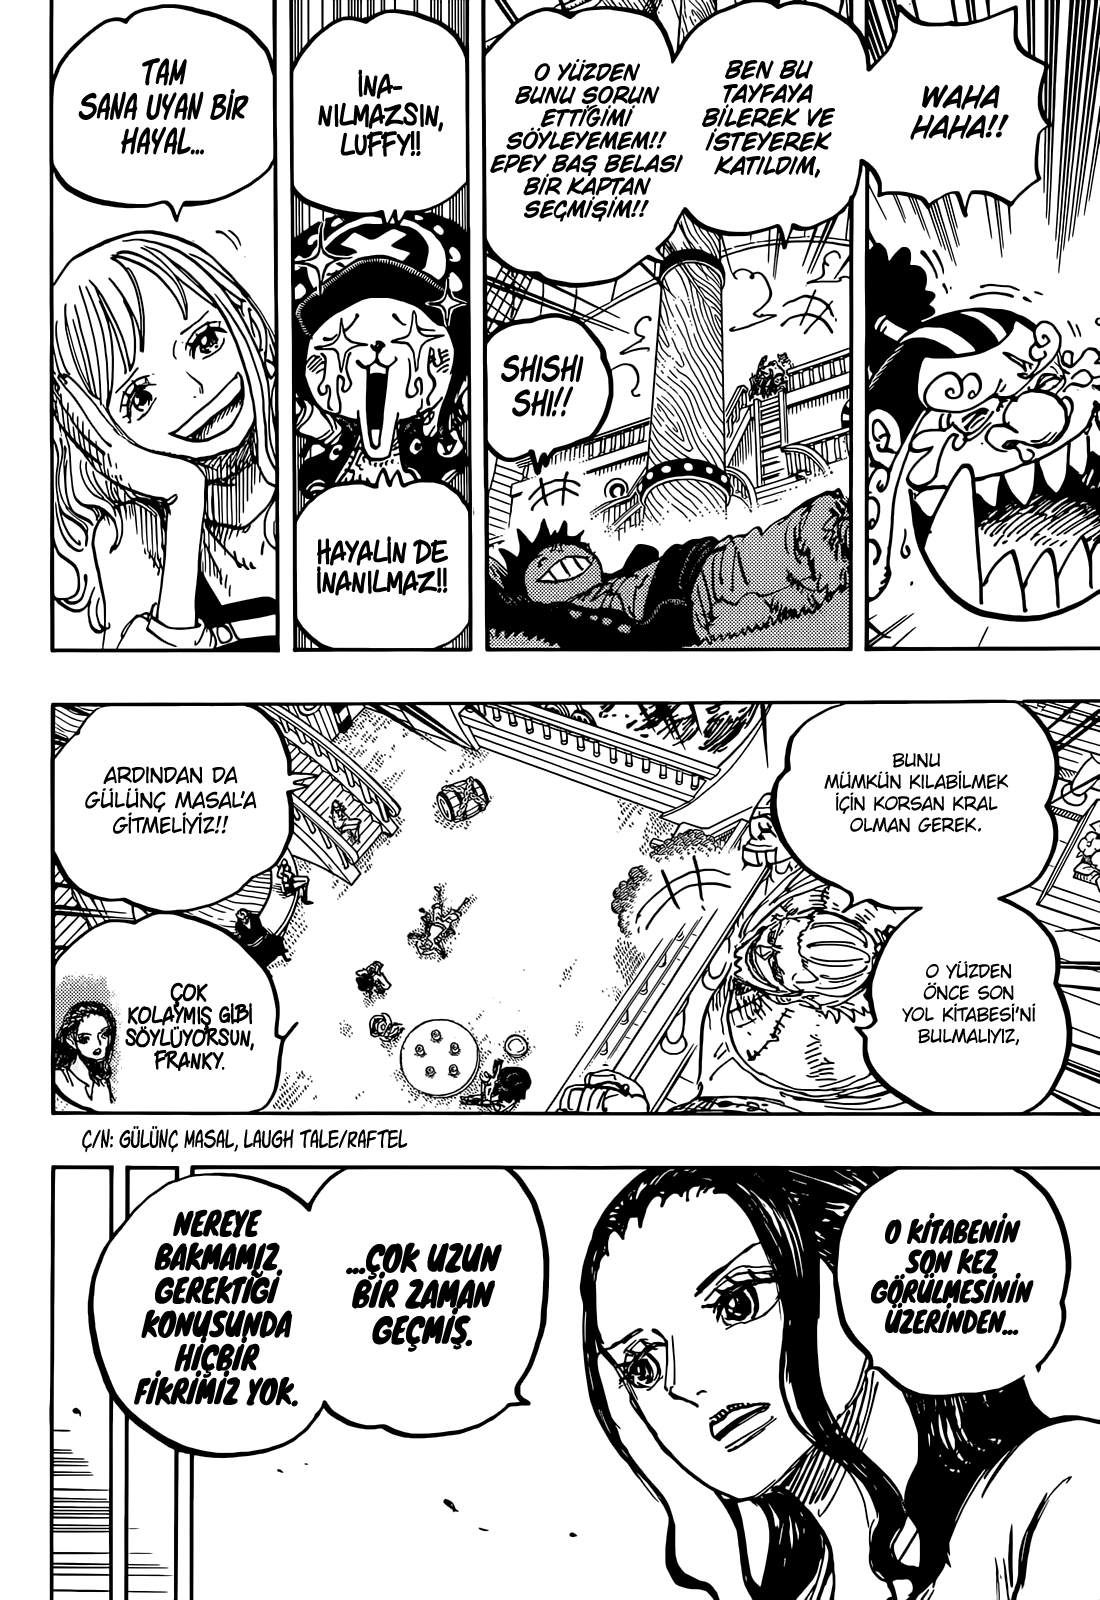 Spoiler] - 1062 Öngörüş  One Piece Türkiye Fan Sayfası, One Piece Türkçe  Manga, One Piece Bölümler, One Piece Film